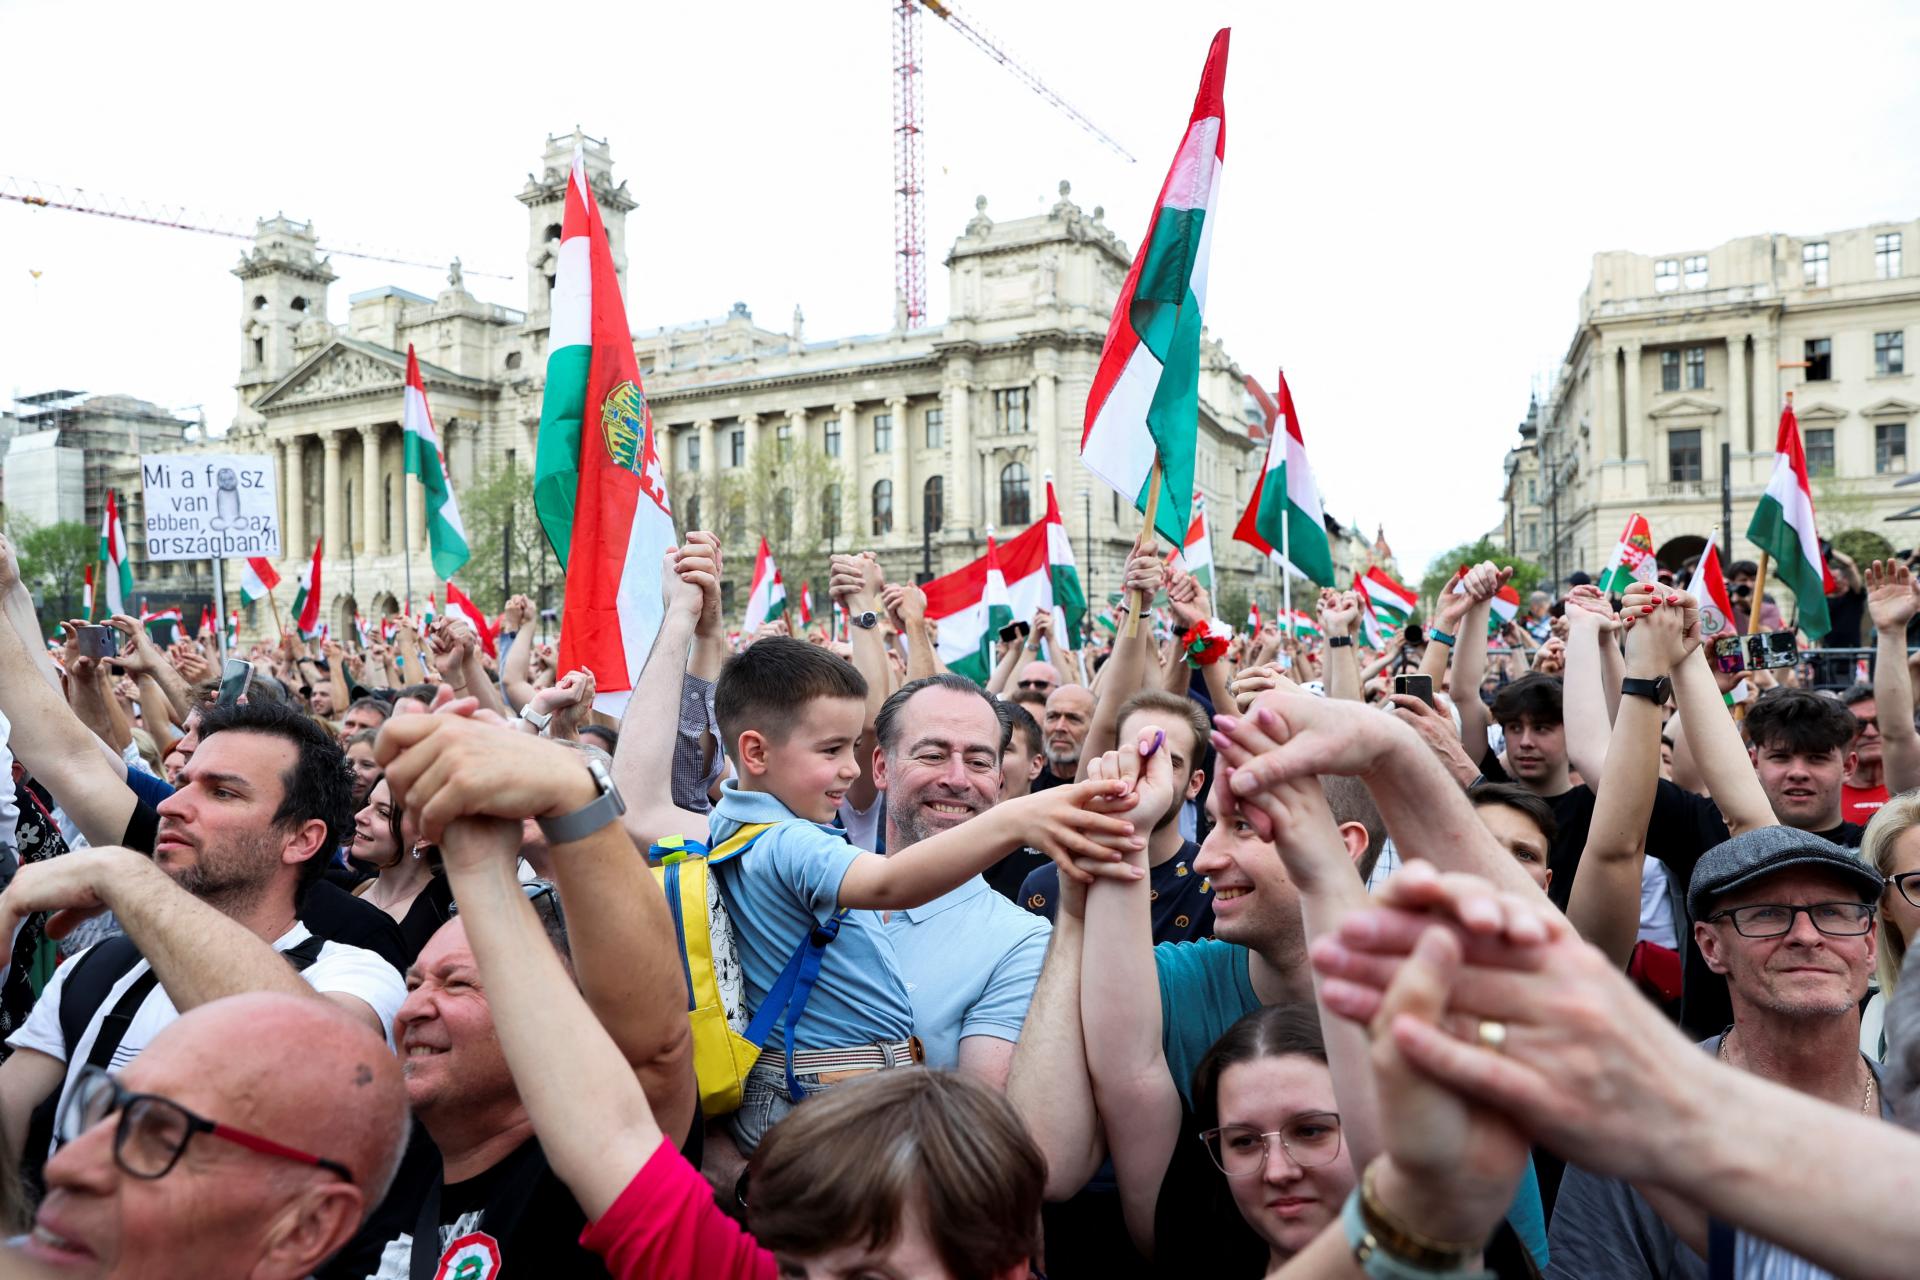 V Budapešti demonštrovali desaťtisíce ľudí, žiadali odstúpenie premiéra Orbána